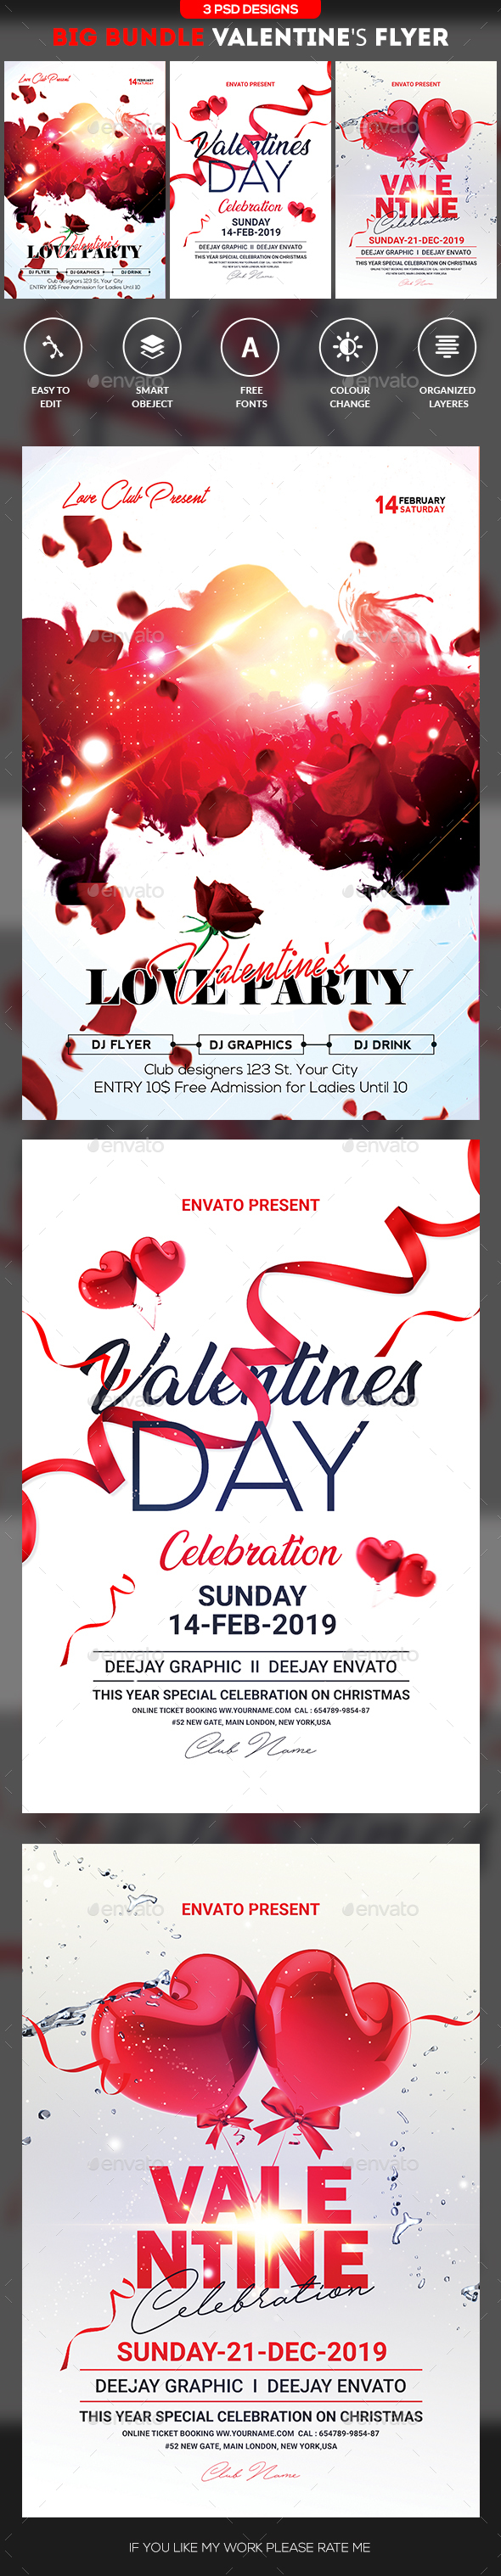 Valentines Day Flyer Bundle